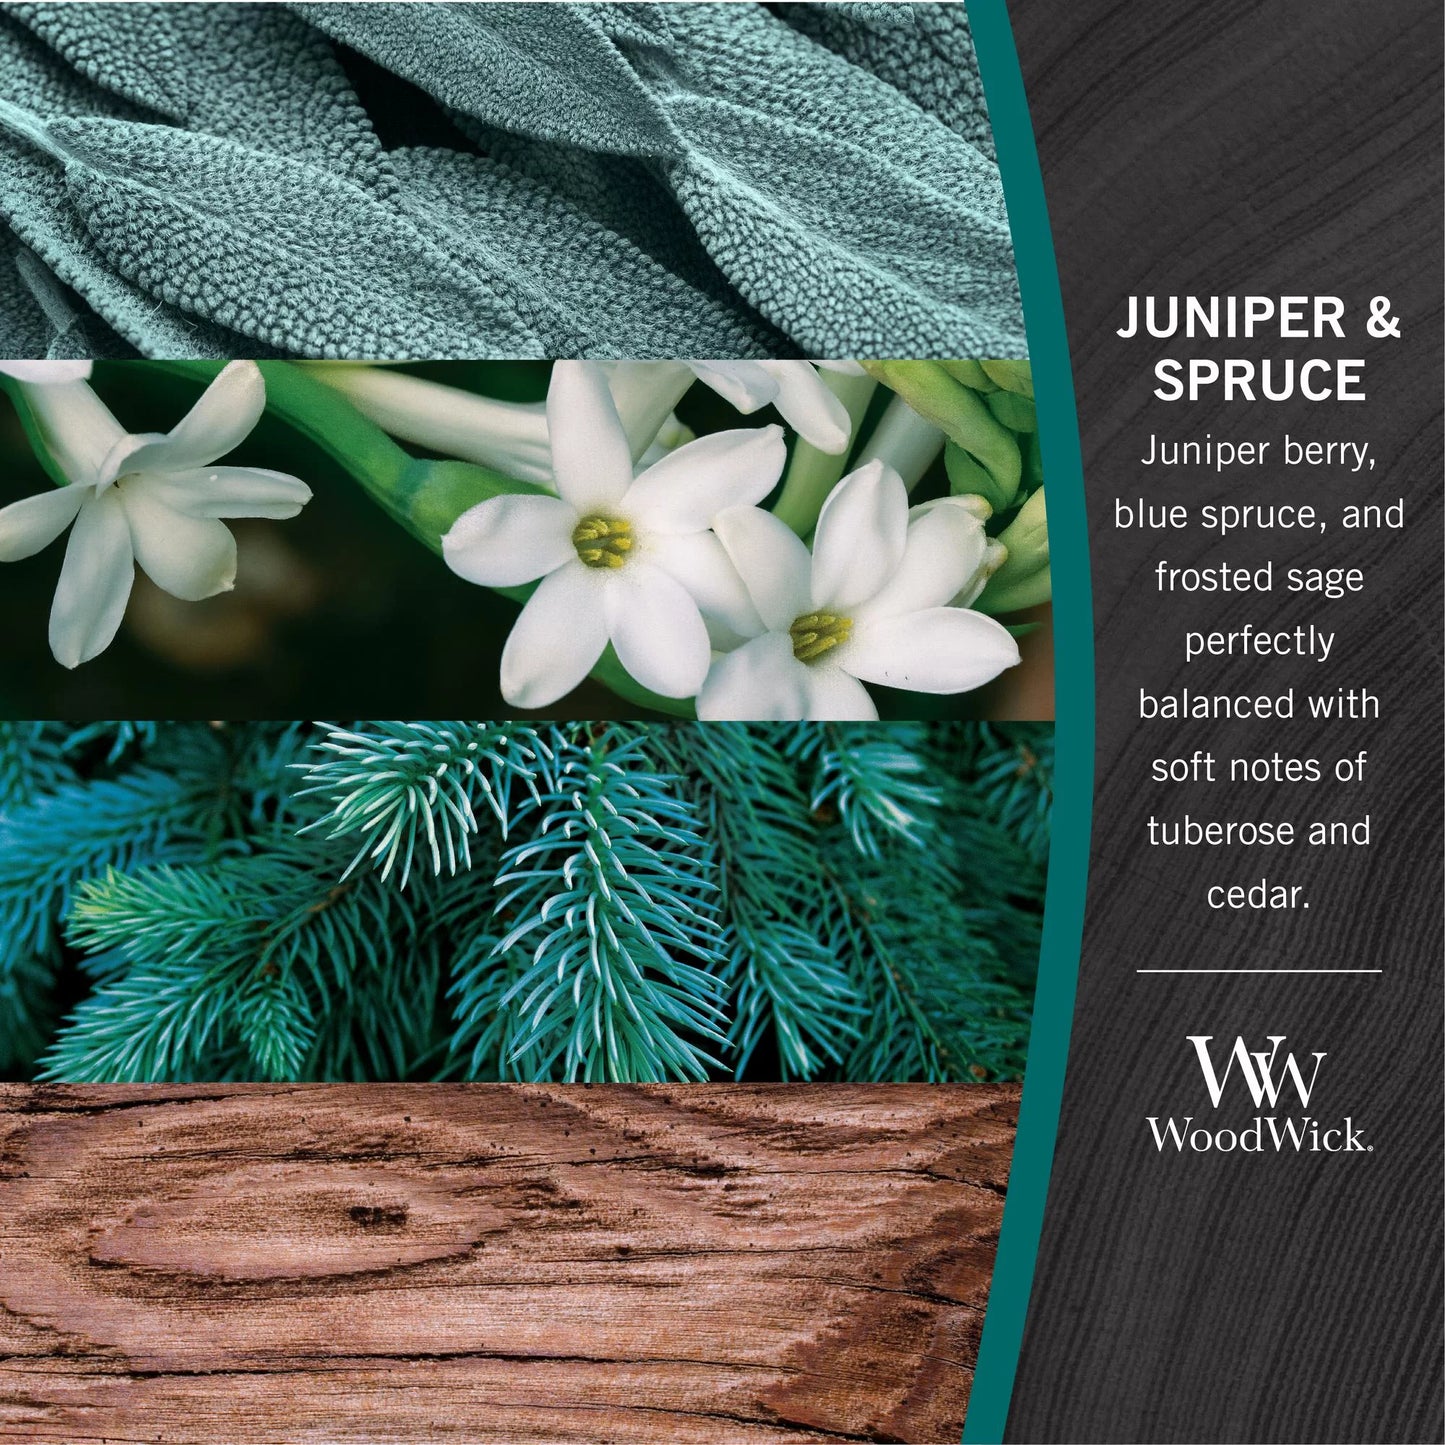 WW MED Juniper Spruce